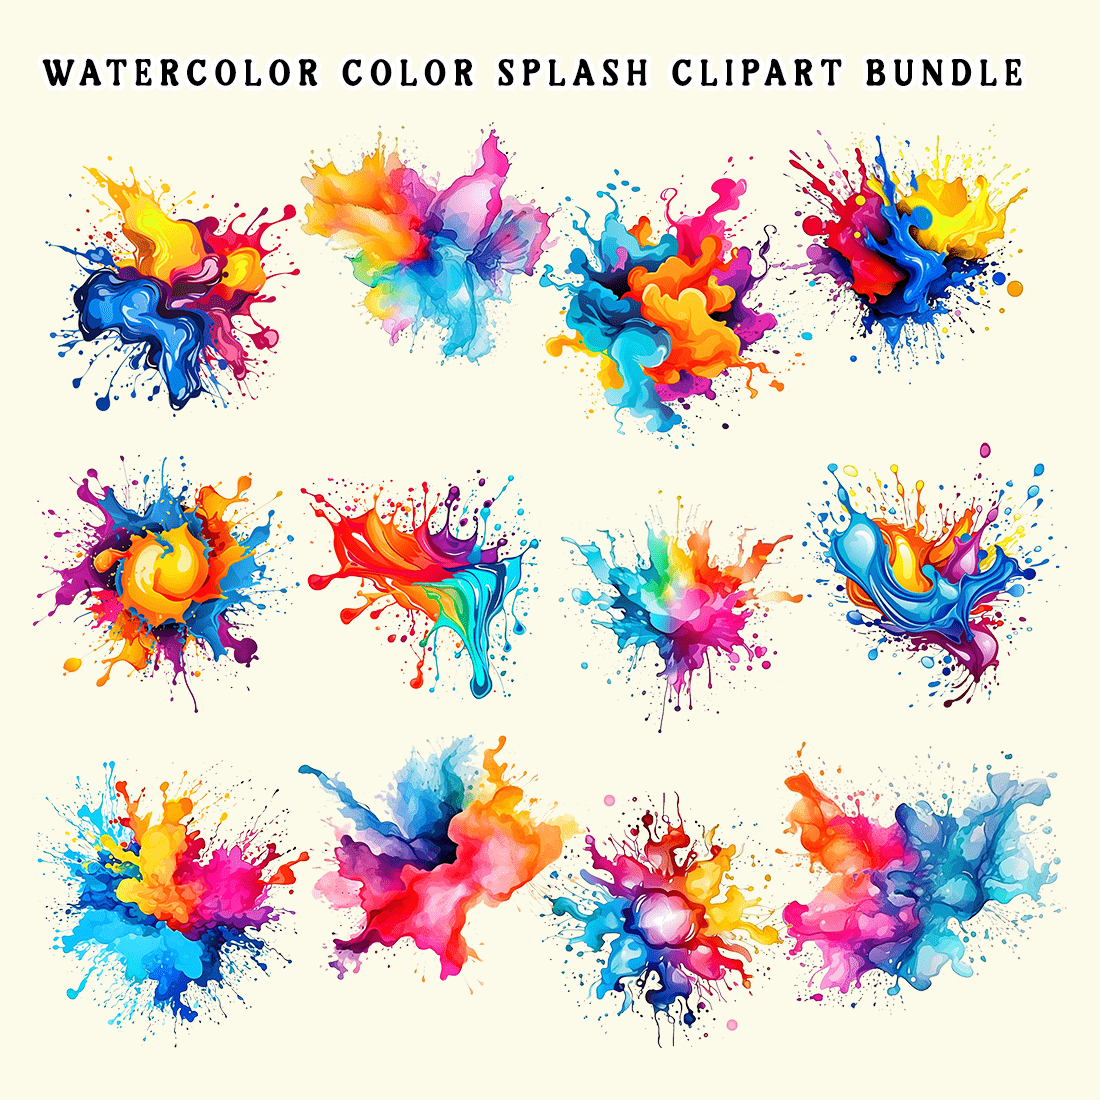 Watercolor Color Splash Clipart Bundle preview image.